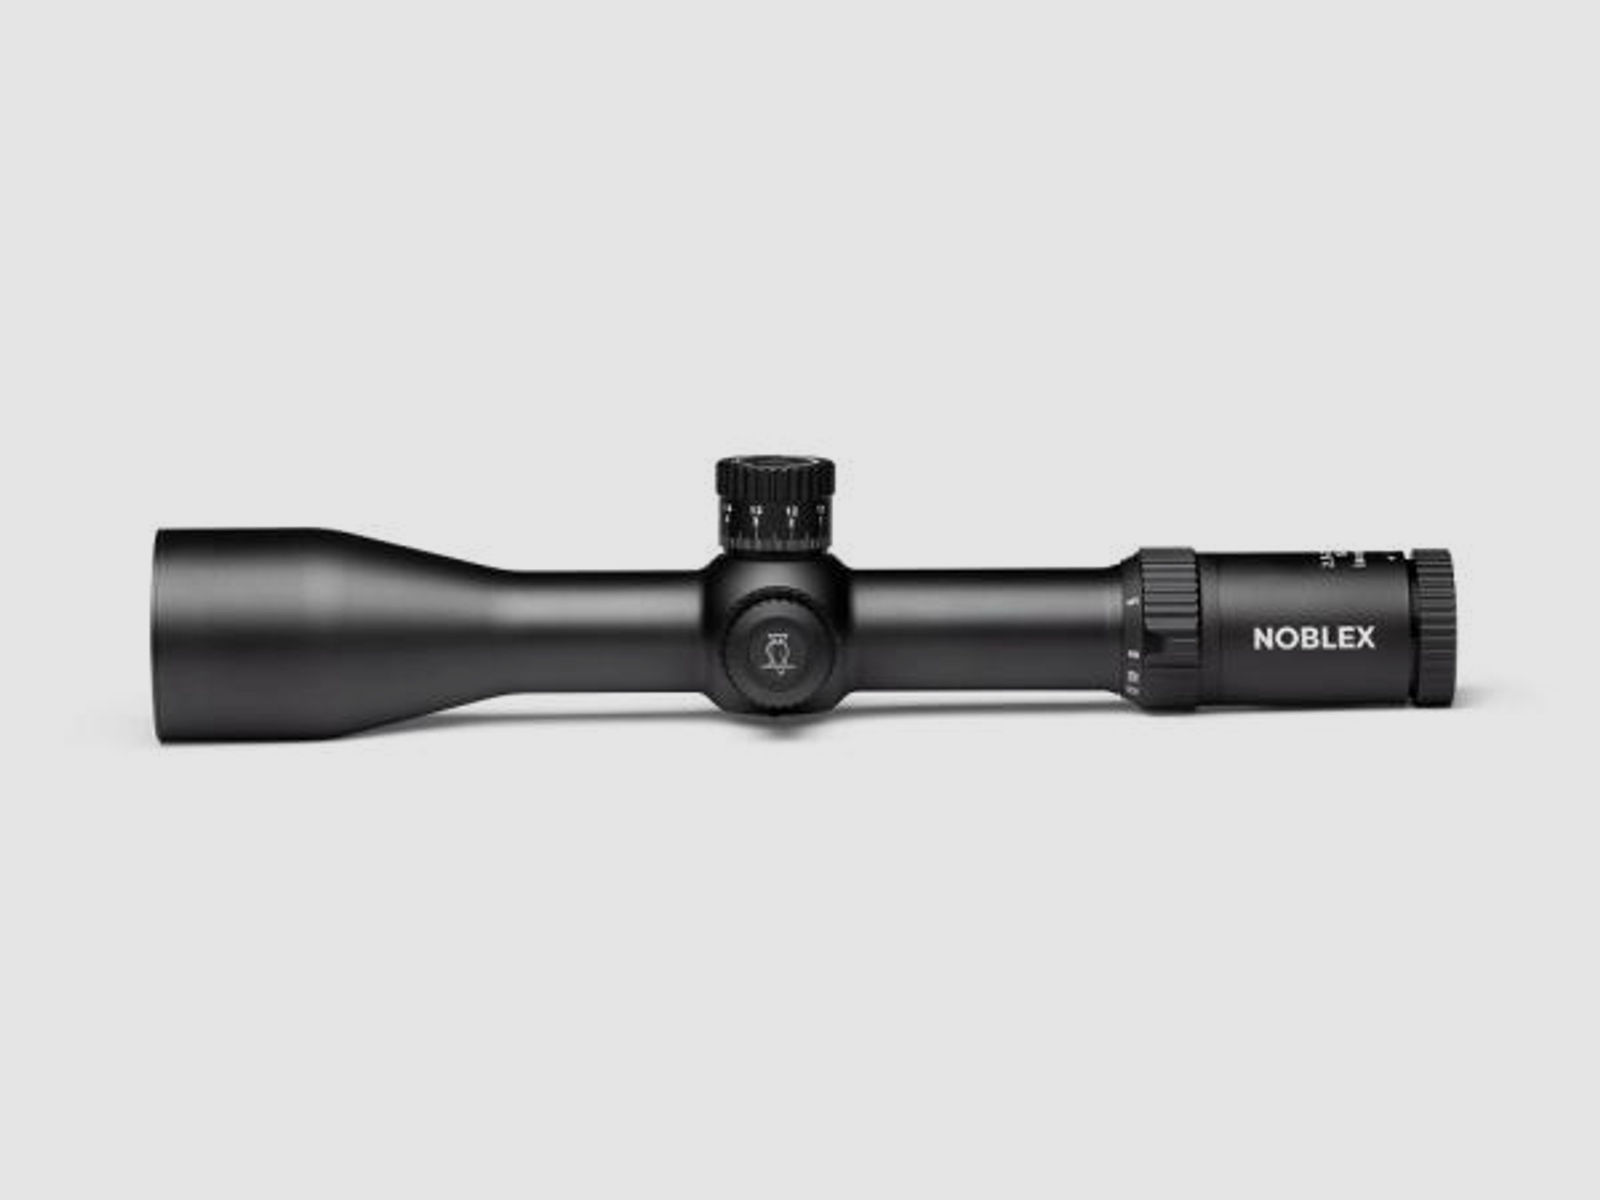 NOBLEX Sport Optics Zielfernrohr mit Leuchtabsehen 2,5-20x50 NZ6 inception (34mm) Abs. MHR